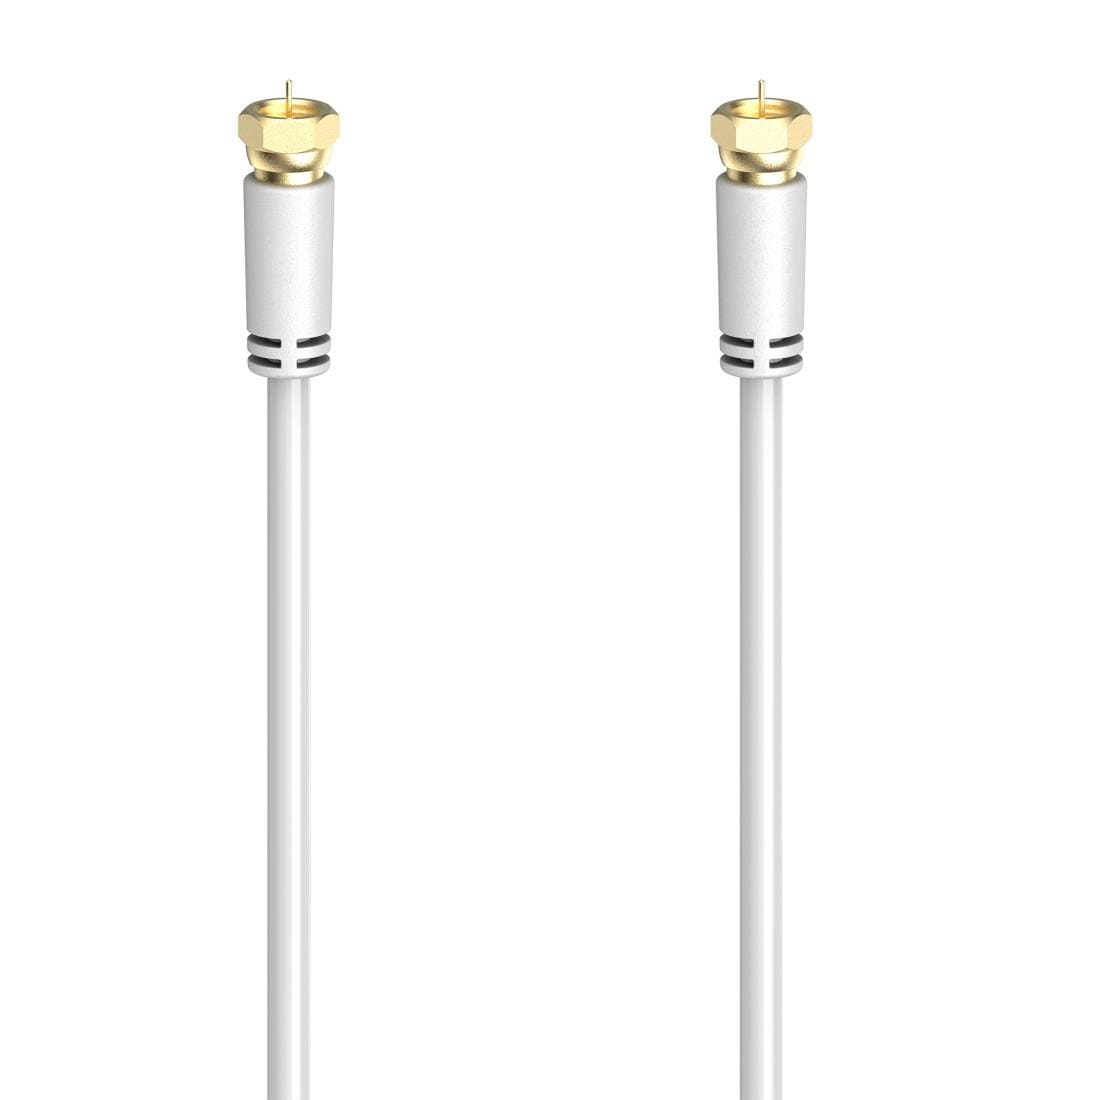 Hama SAT-Kabel »SAT-Anschlusskabel,F-Stecker -F-Stecker,1,5 - 5m vergoldet 100 dB,Weiß«, 150 cm